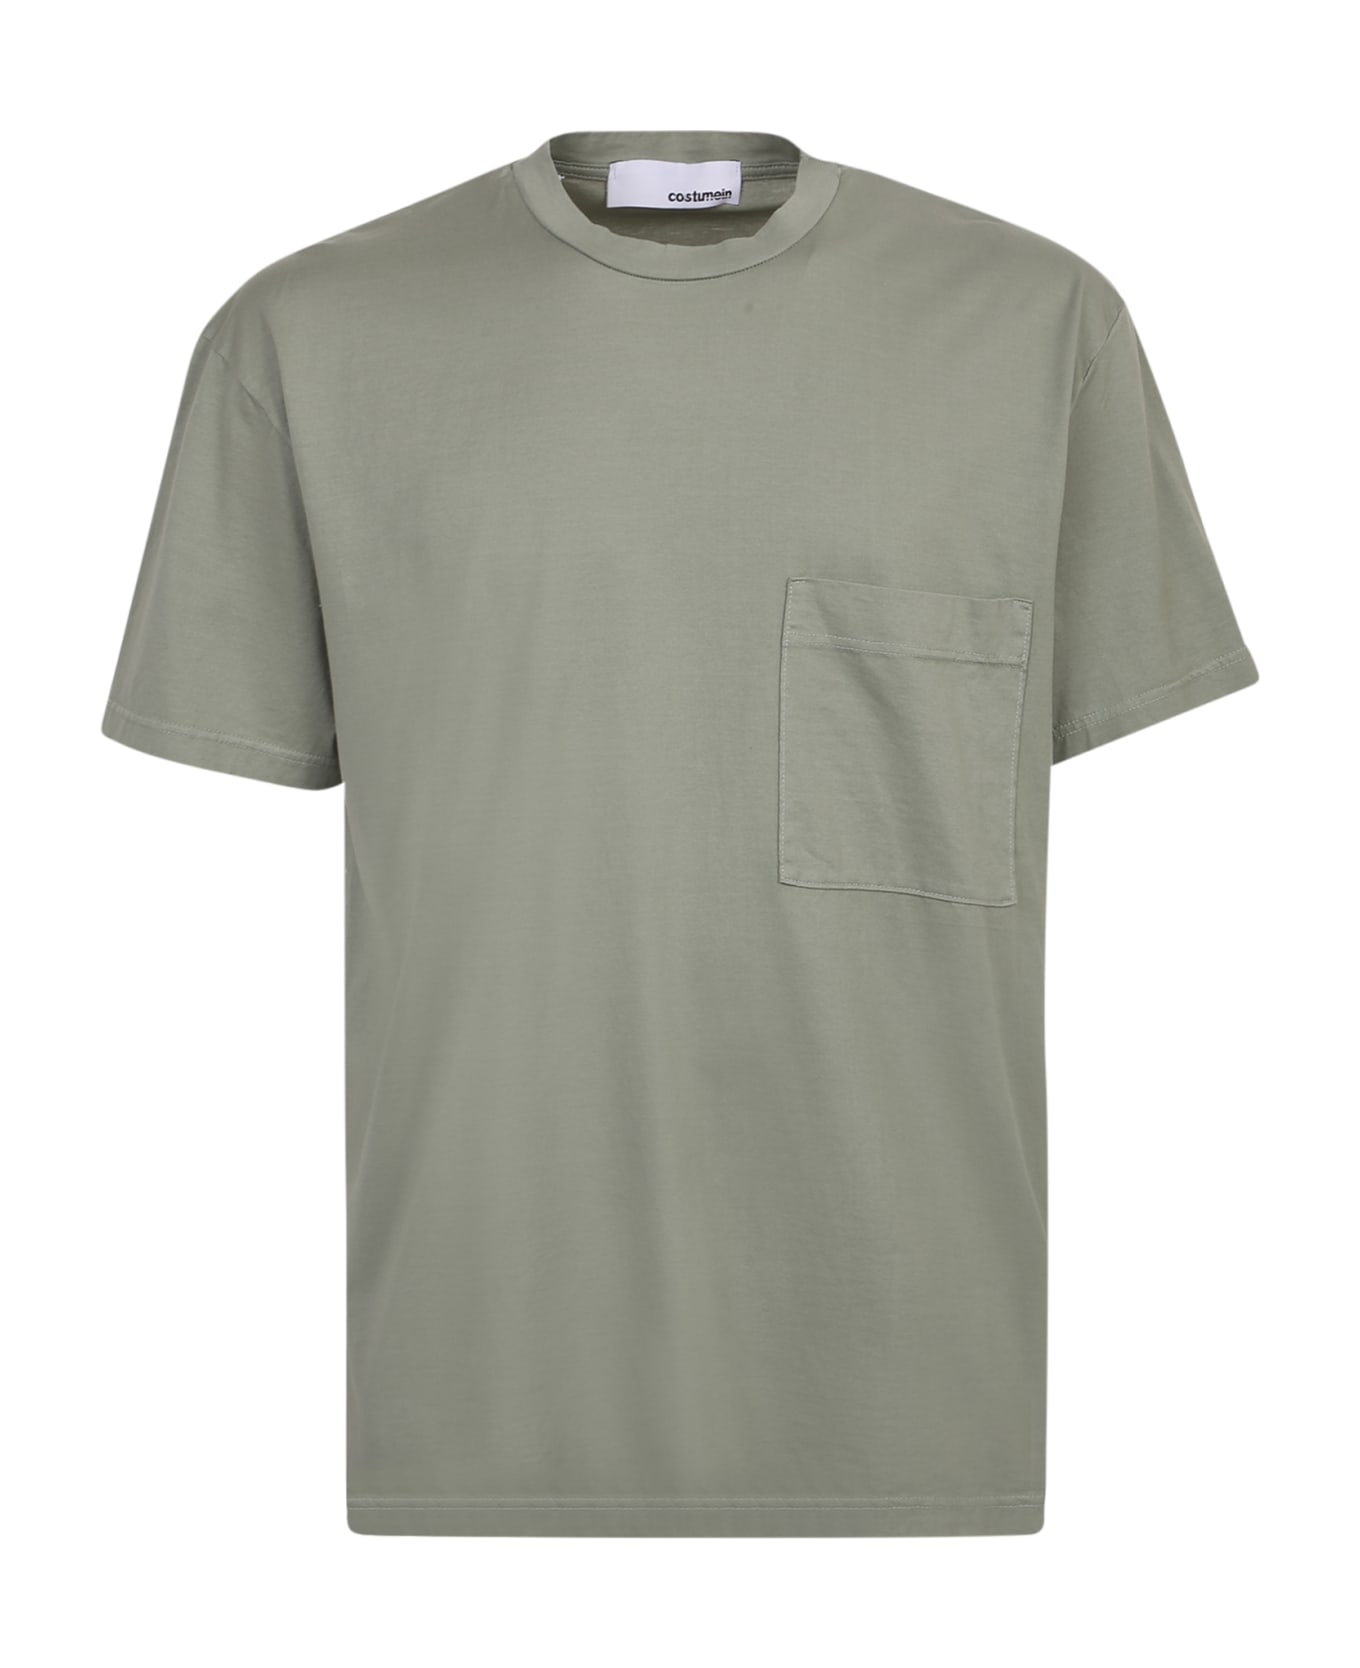 Giuseppe di Morabito William Cotton T-shirt - Green シャツ